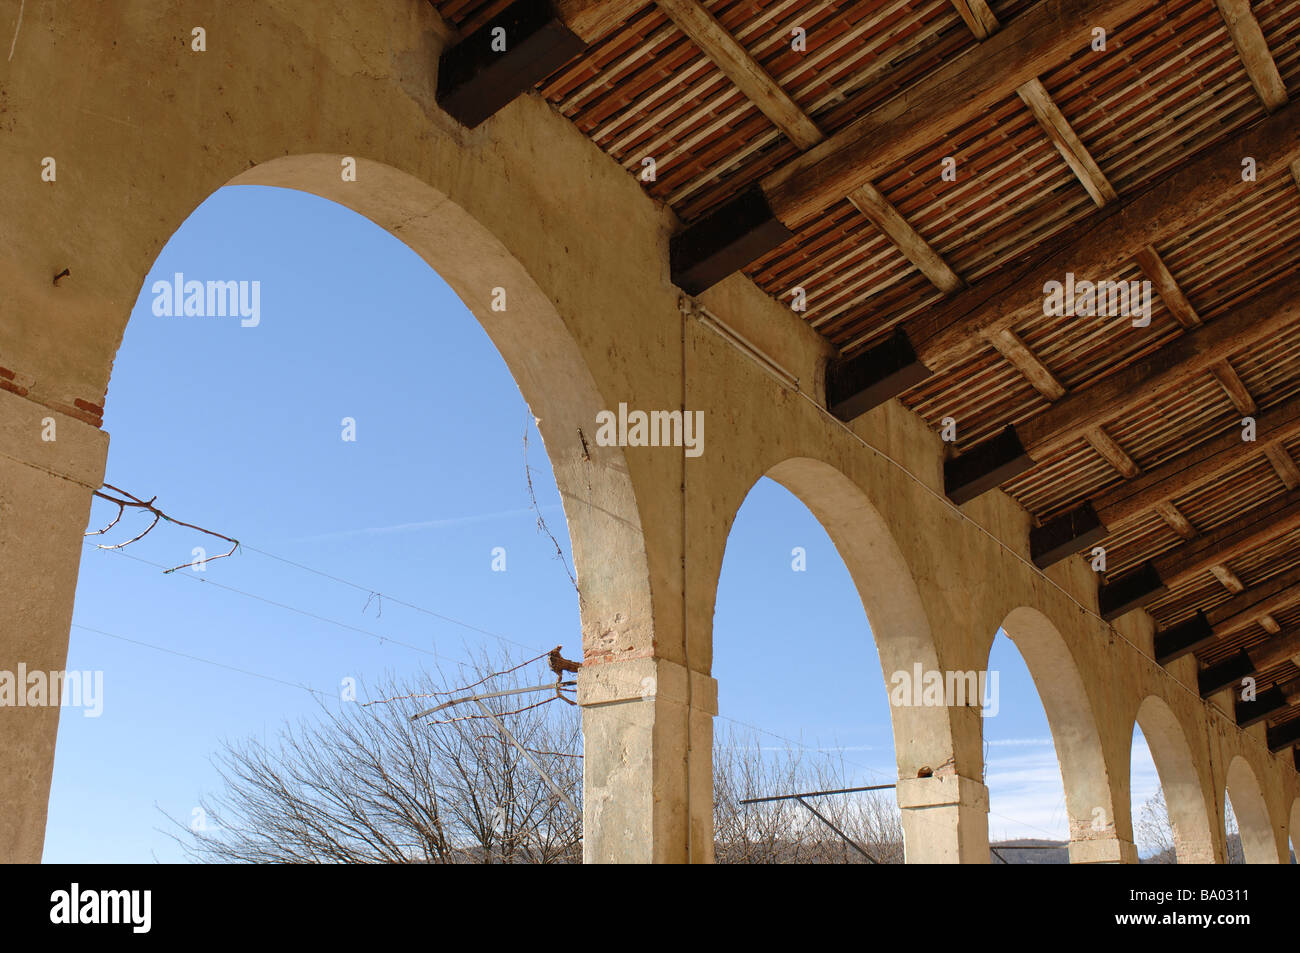 Archways on the veranda of an Italian Farm building Stock Photo